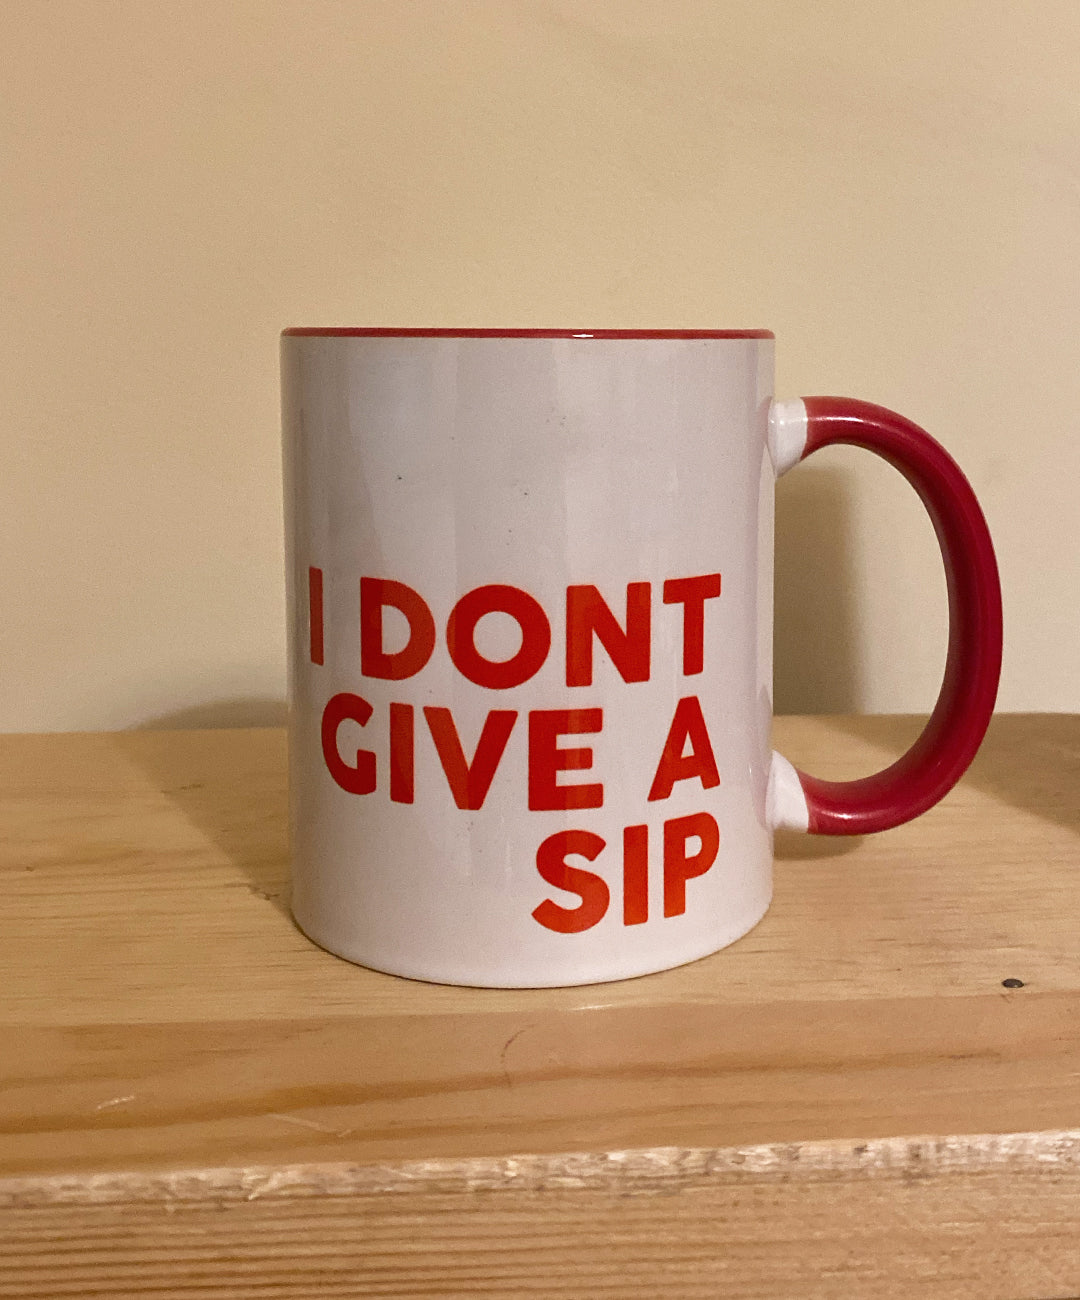 I don't give a sip mug